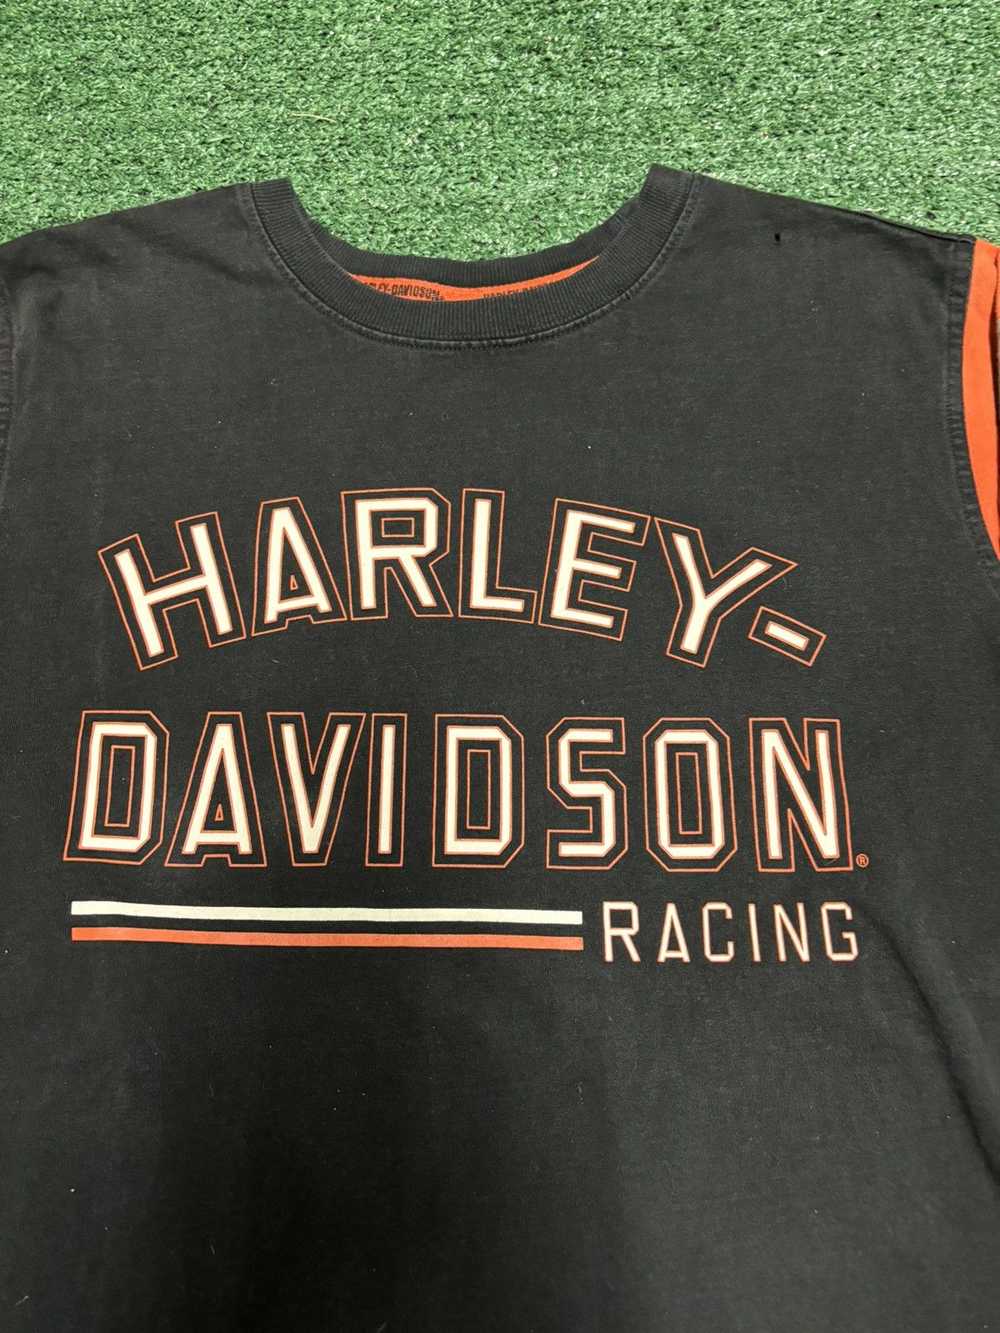 Harley Davidson Harley Davidson Racing Long Sleev… - image 2